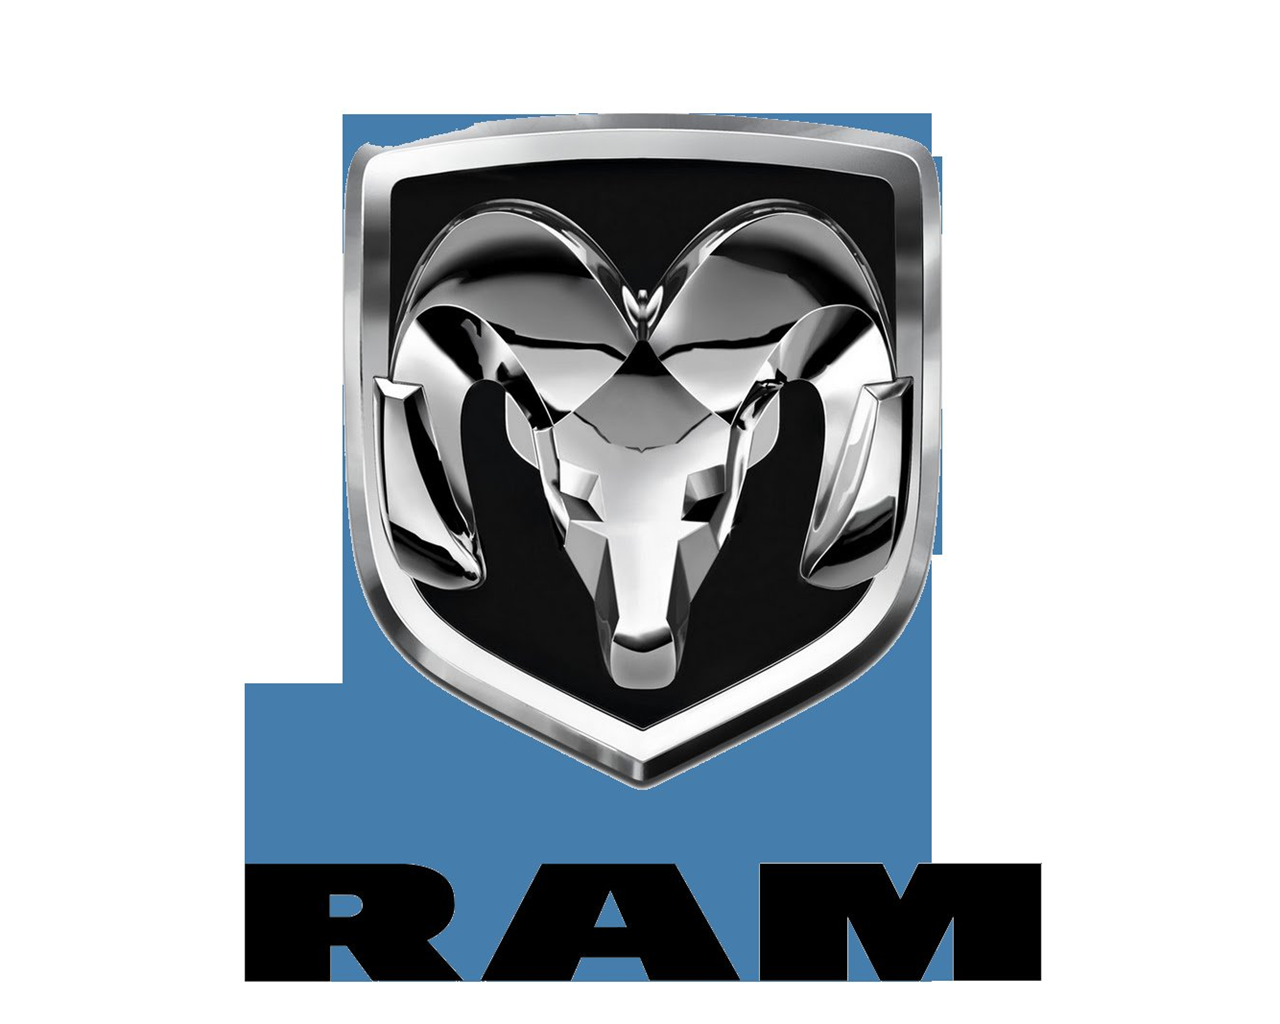 Dodge Ram Logo Wallpaper Image Desktop Background